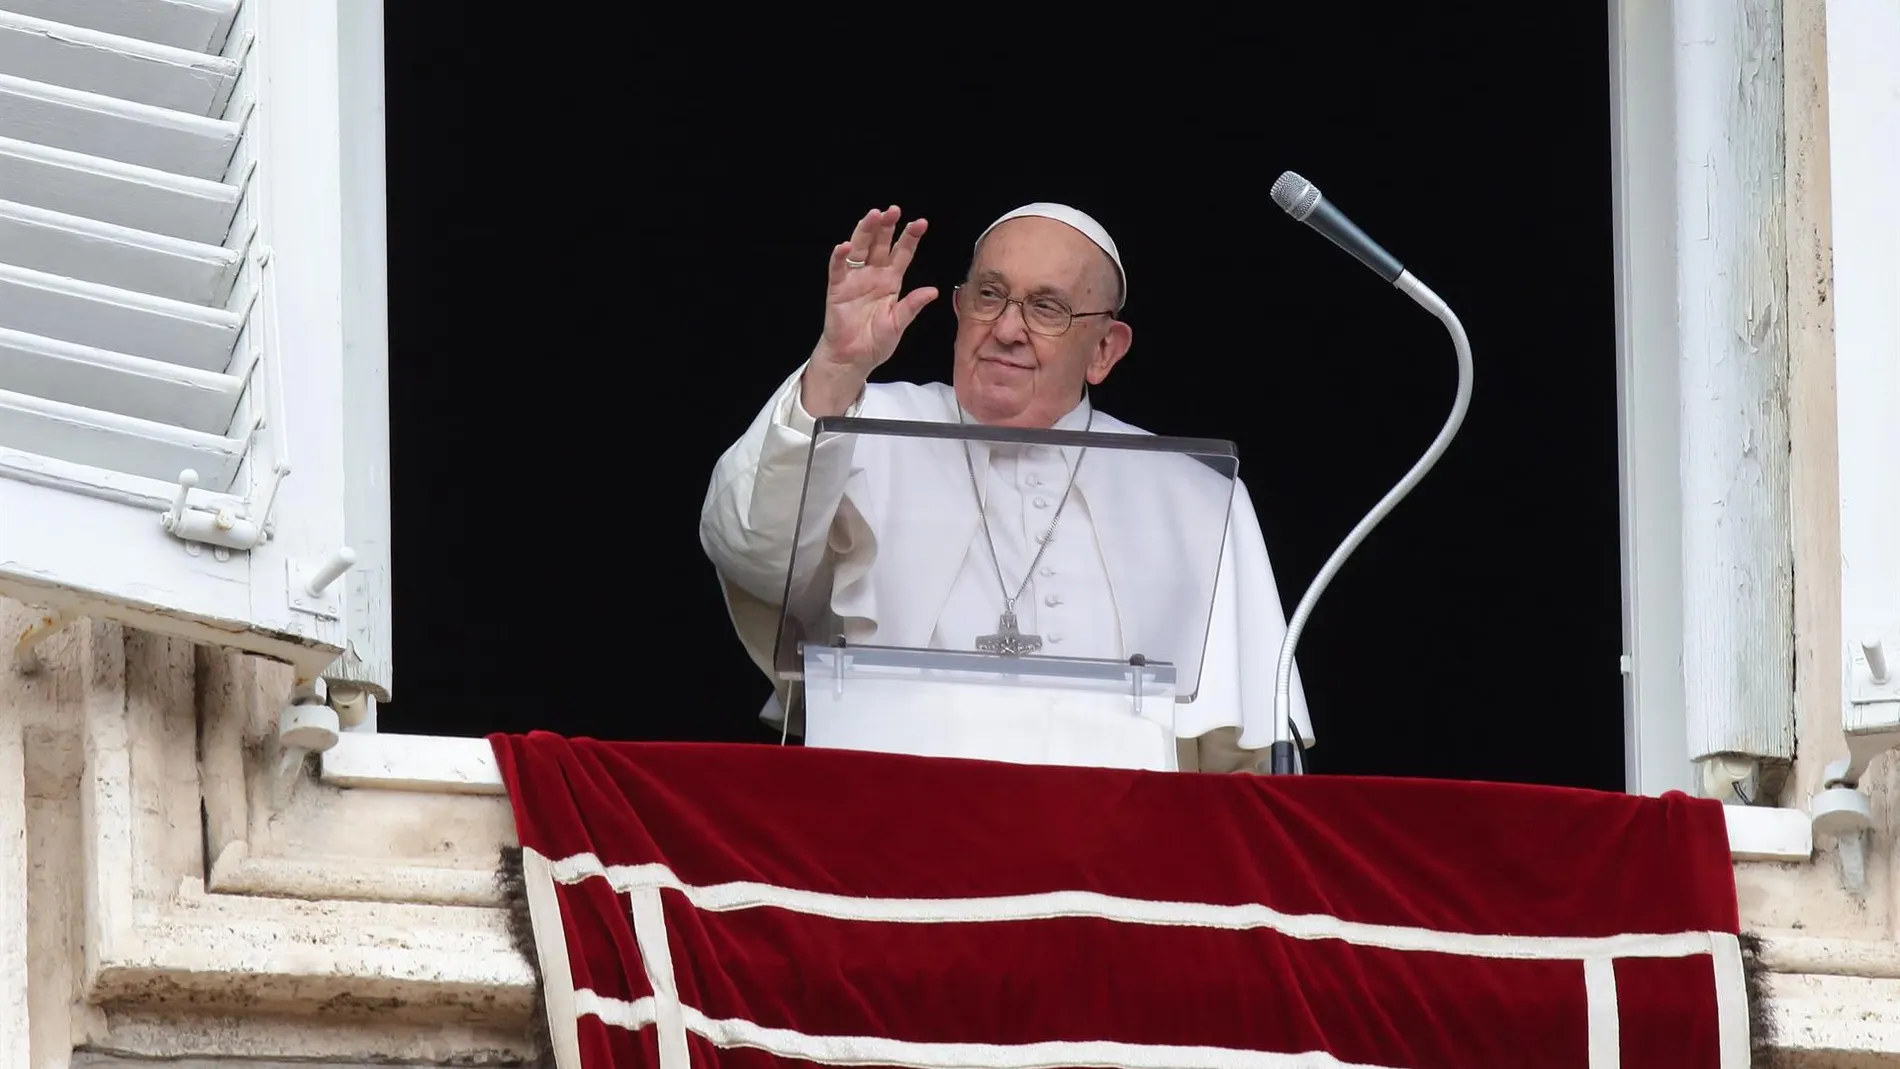 El Papa reclama caminos "sin presiones ni desgarros" para tener una mayor presencia de mujeres en la Iglesia